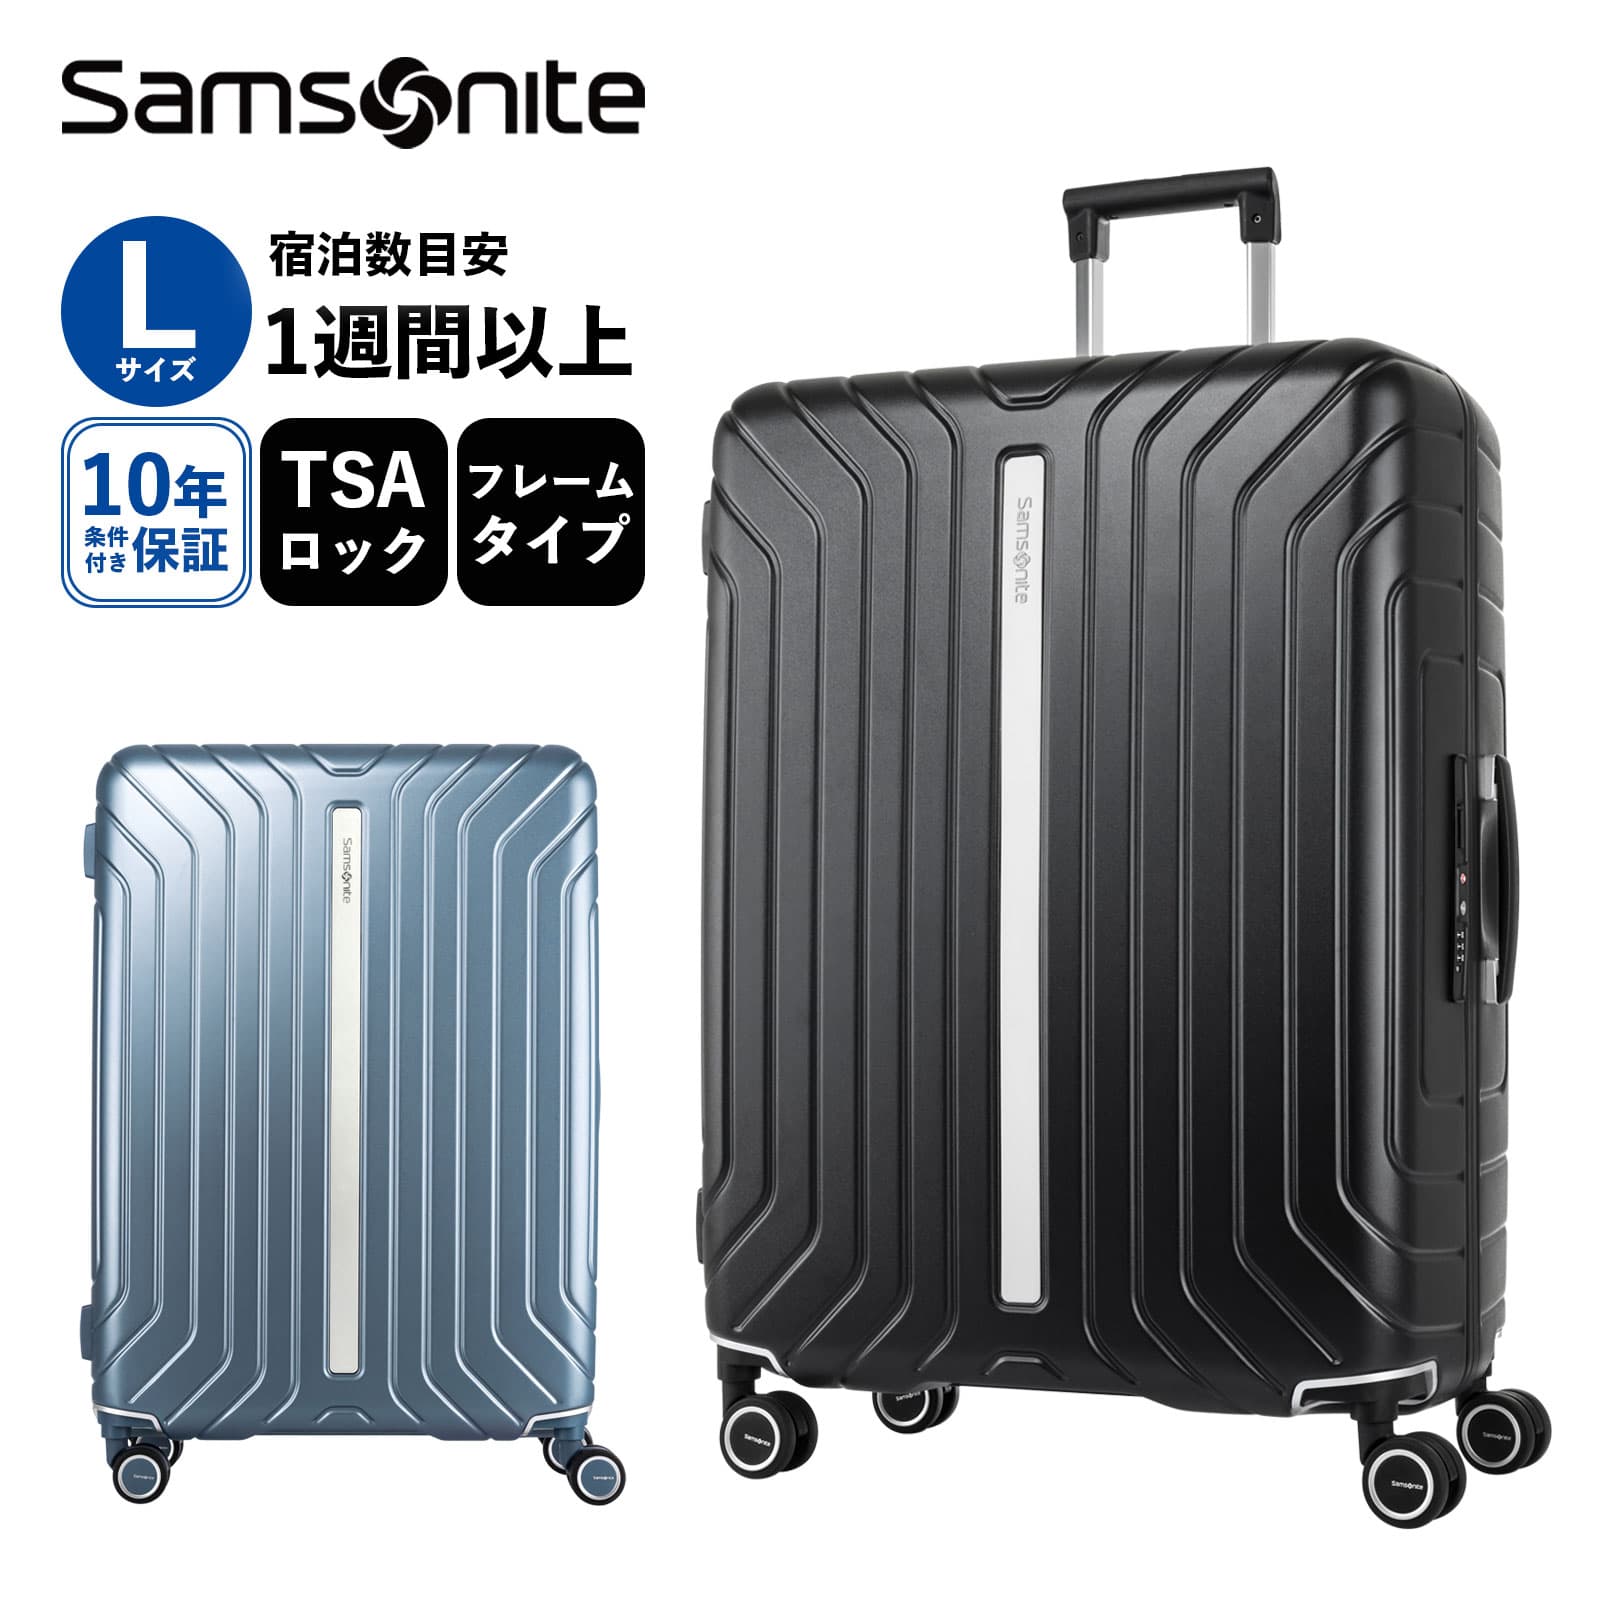 【楽天市場】公式 サムソナイト Samsonite スーツケース Mサイズ 